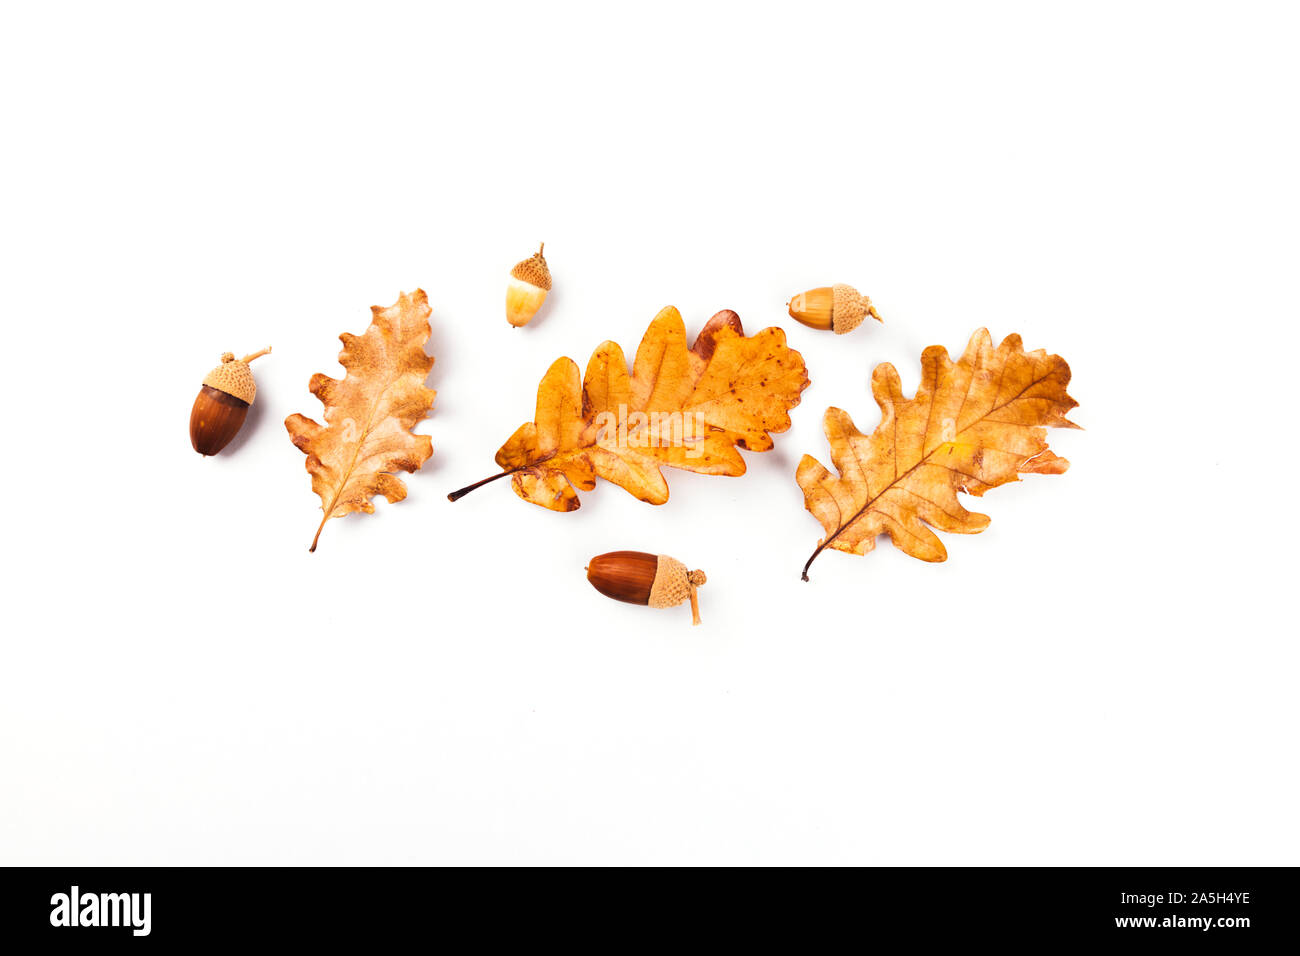 Herbst Herbst Blätter von Bäumen, Hagebutte. Flach, Ansicht von oben. Zusammensetzung für Ihre Konstruktion. Stockfoto